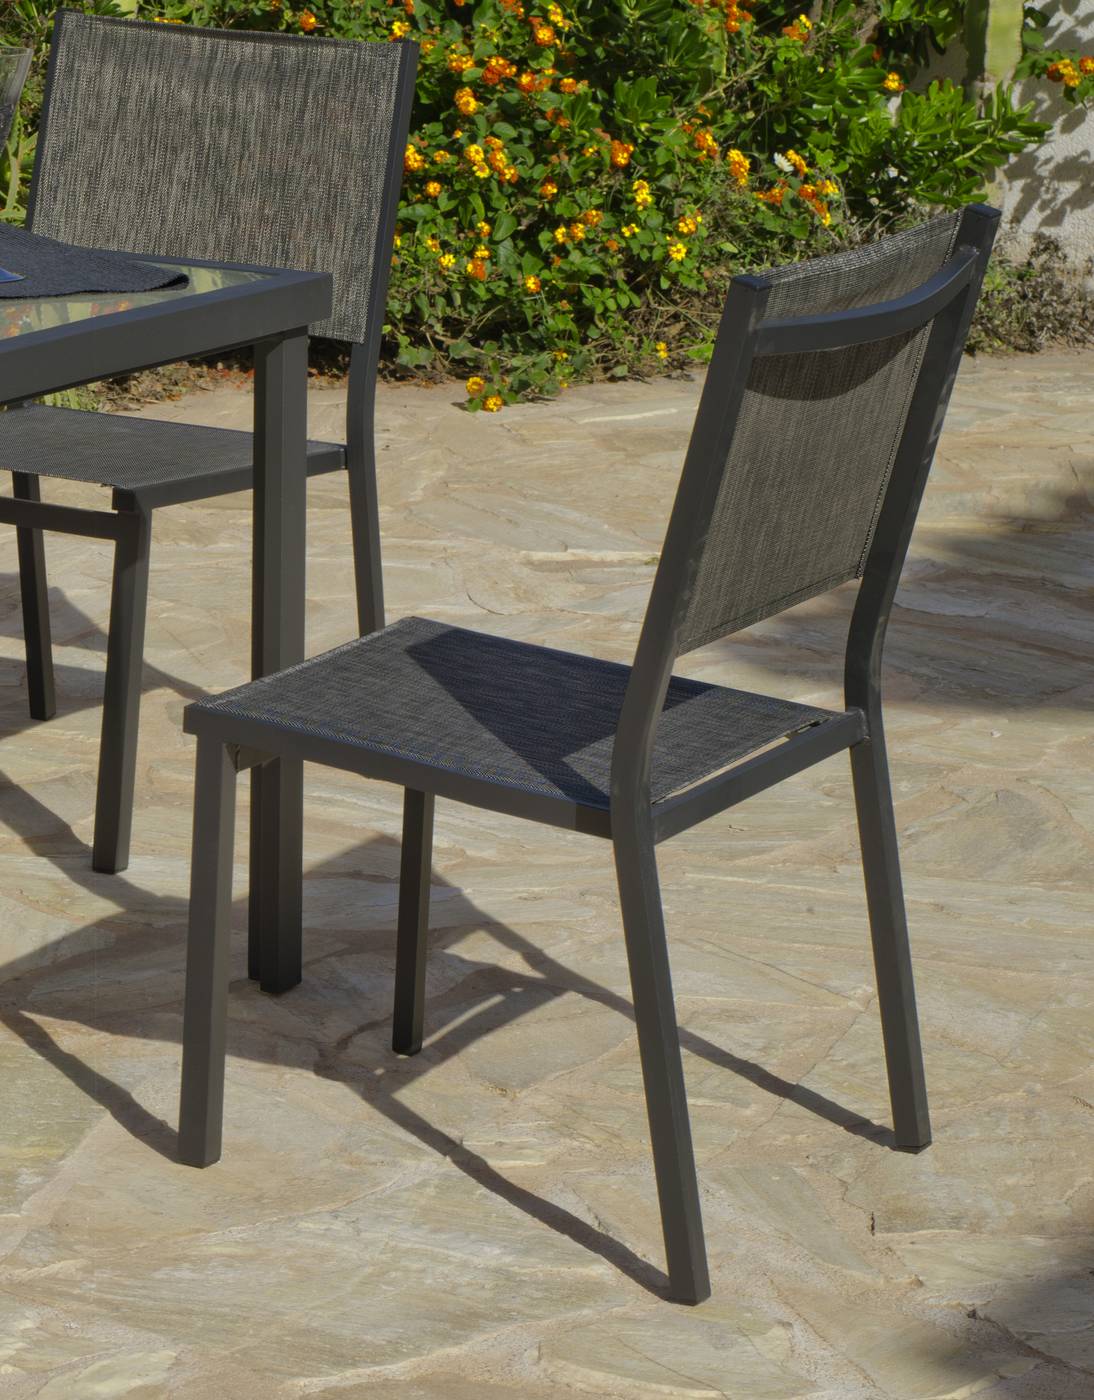 Conjunto Aluminio Horizon 130-4 - Conjunto de aluminio color antracita: mesa de 130 cm. + 4 sillas de aluminio y textilen